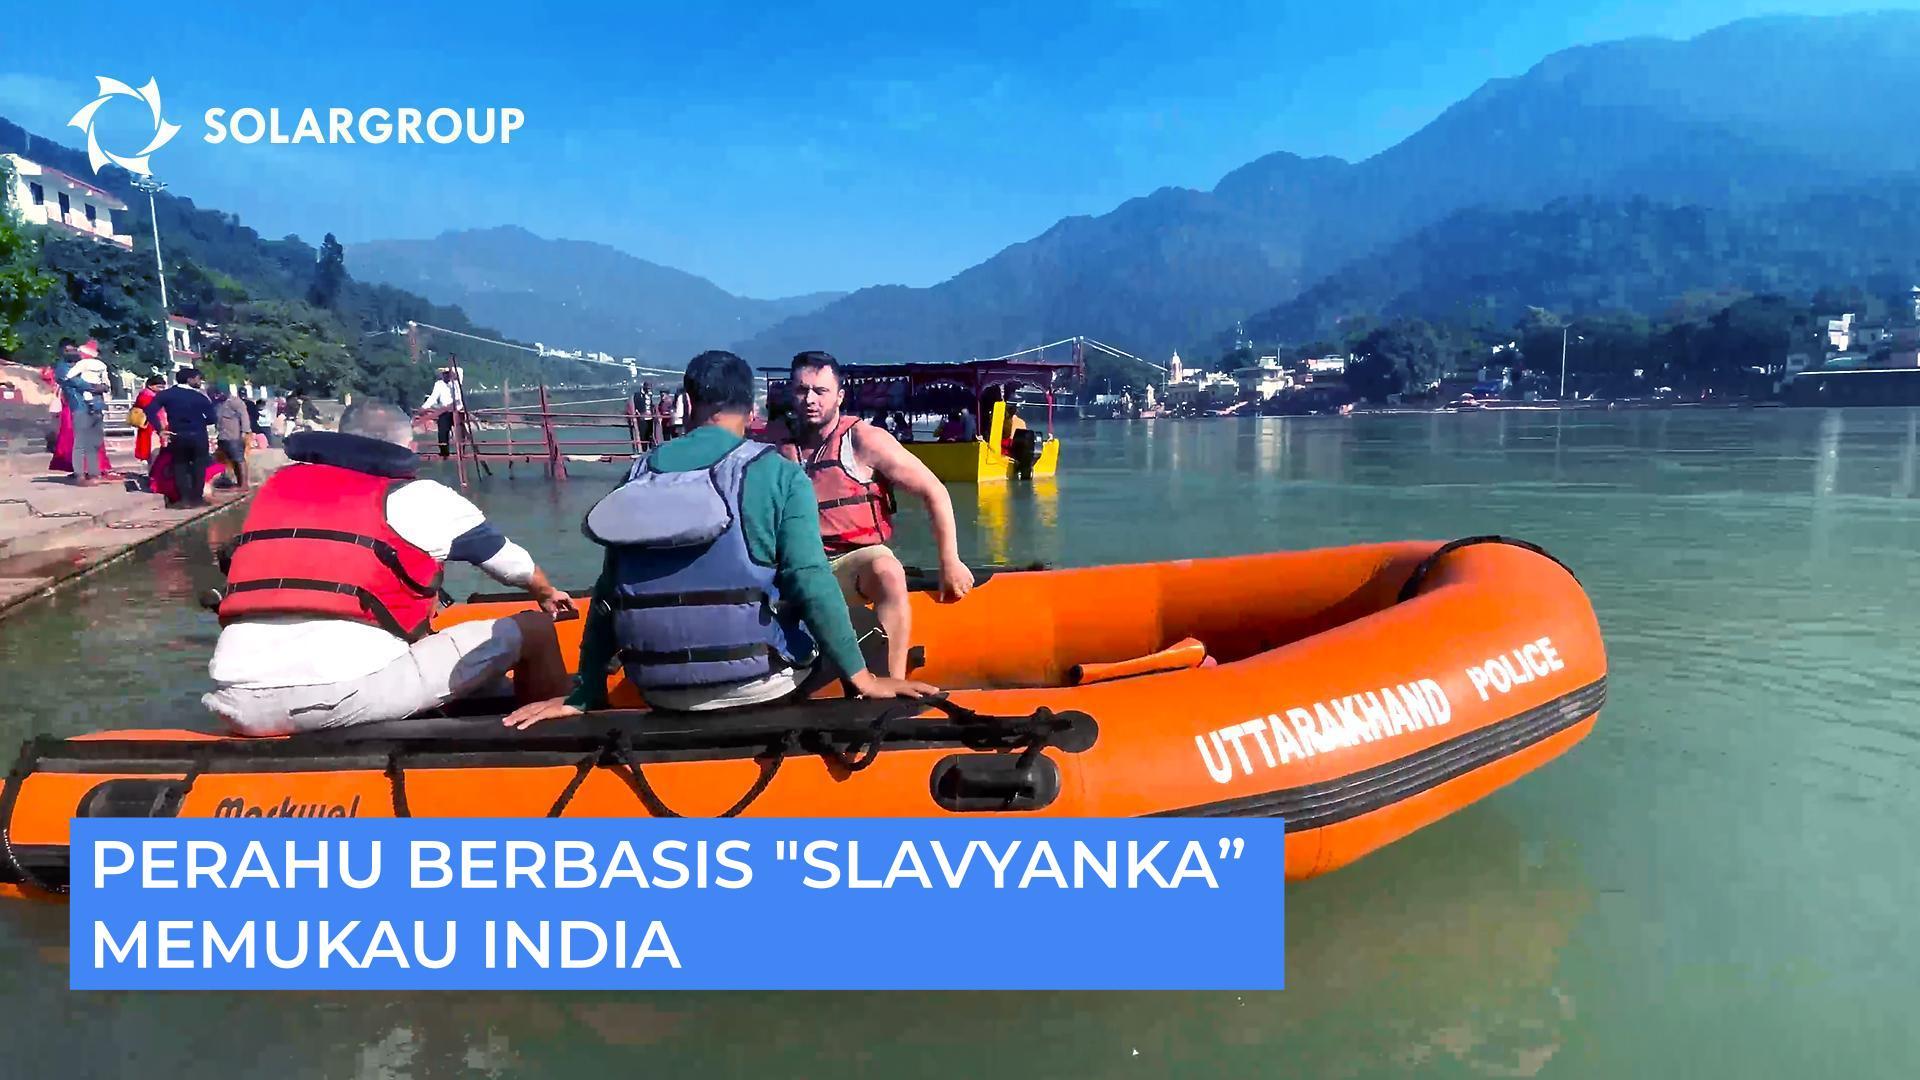 Mengapa motor perahu berbasis "Slavyanka" memukau para pebisnis India?